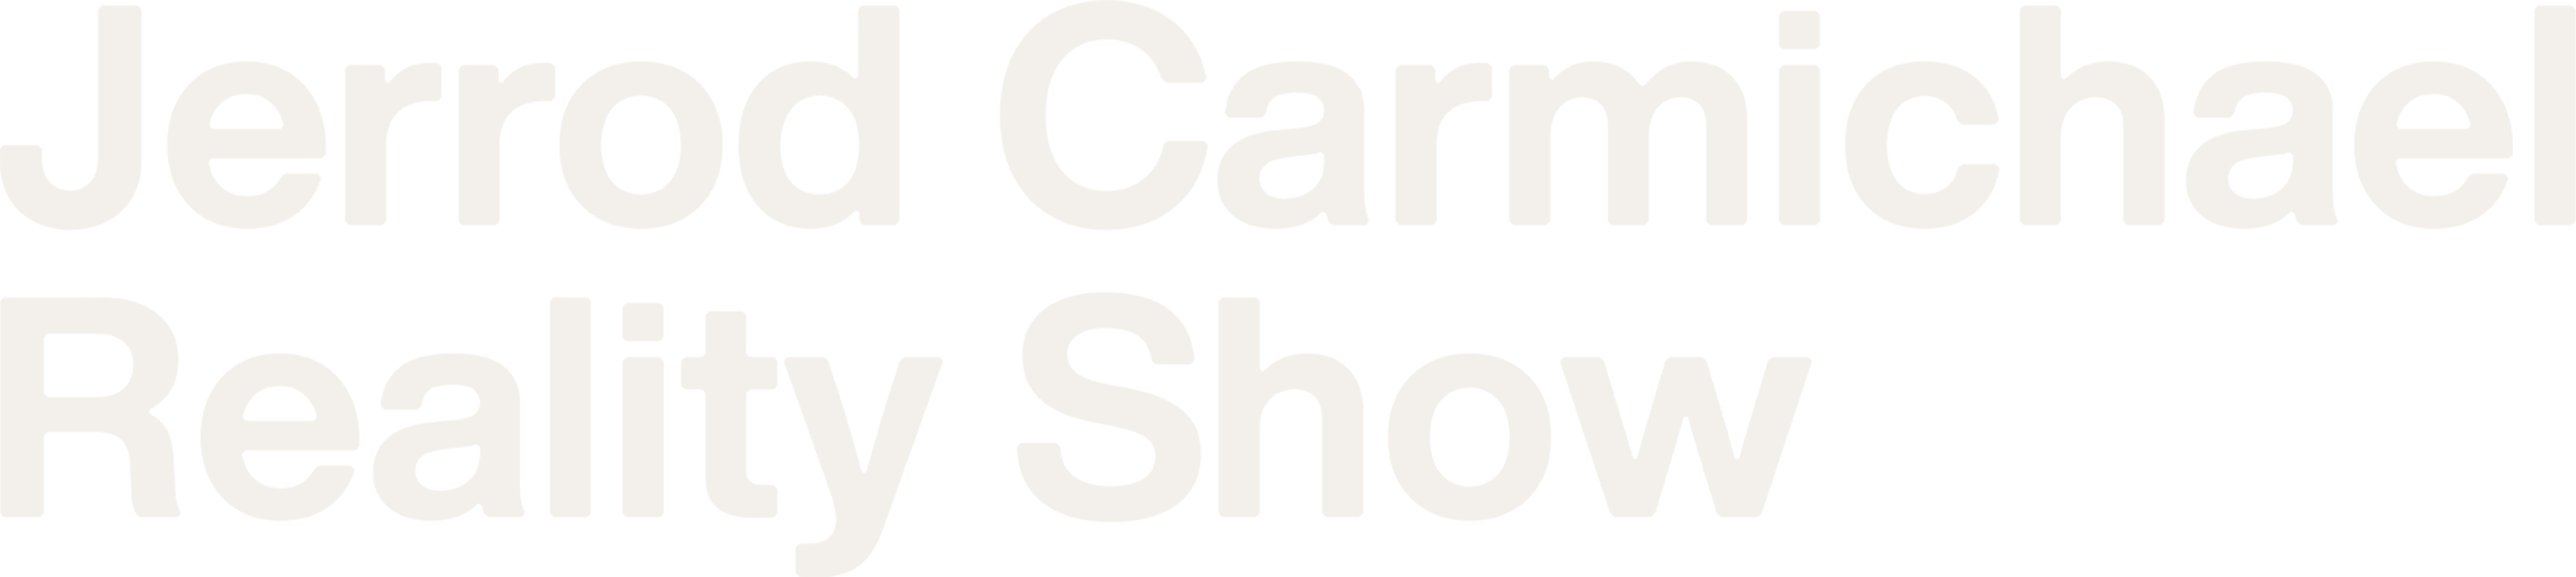 Jerrod Carmichael Reality Show logo